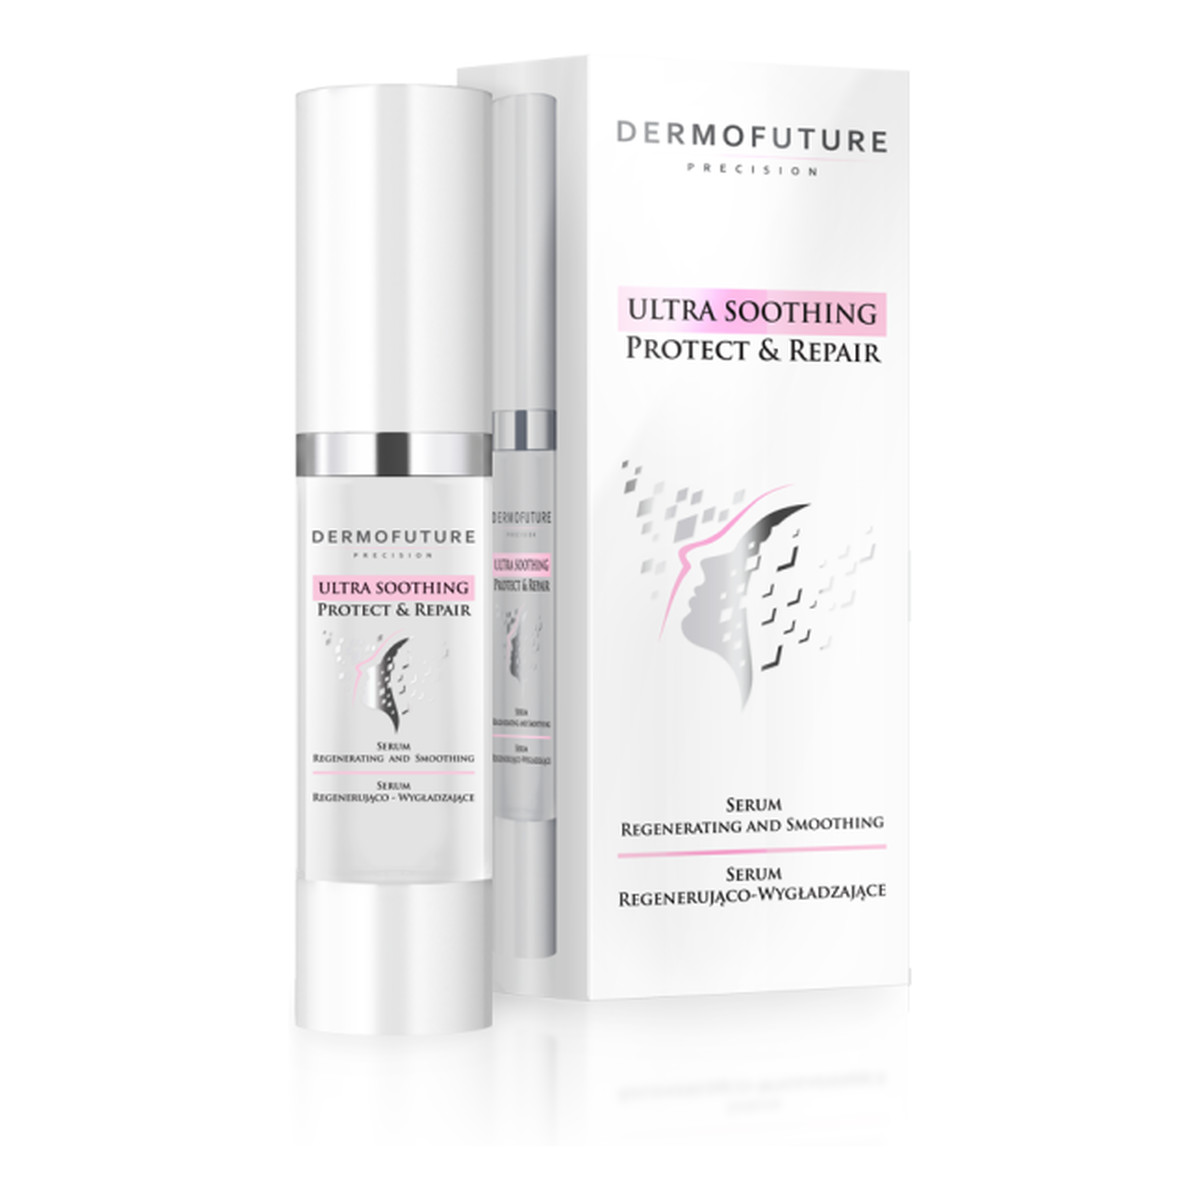 DermoFuture Precision Ultra Soothing Protect & Repair serum regenerująco-wygładzające do twarzy 30ml